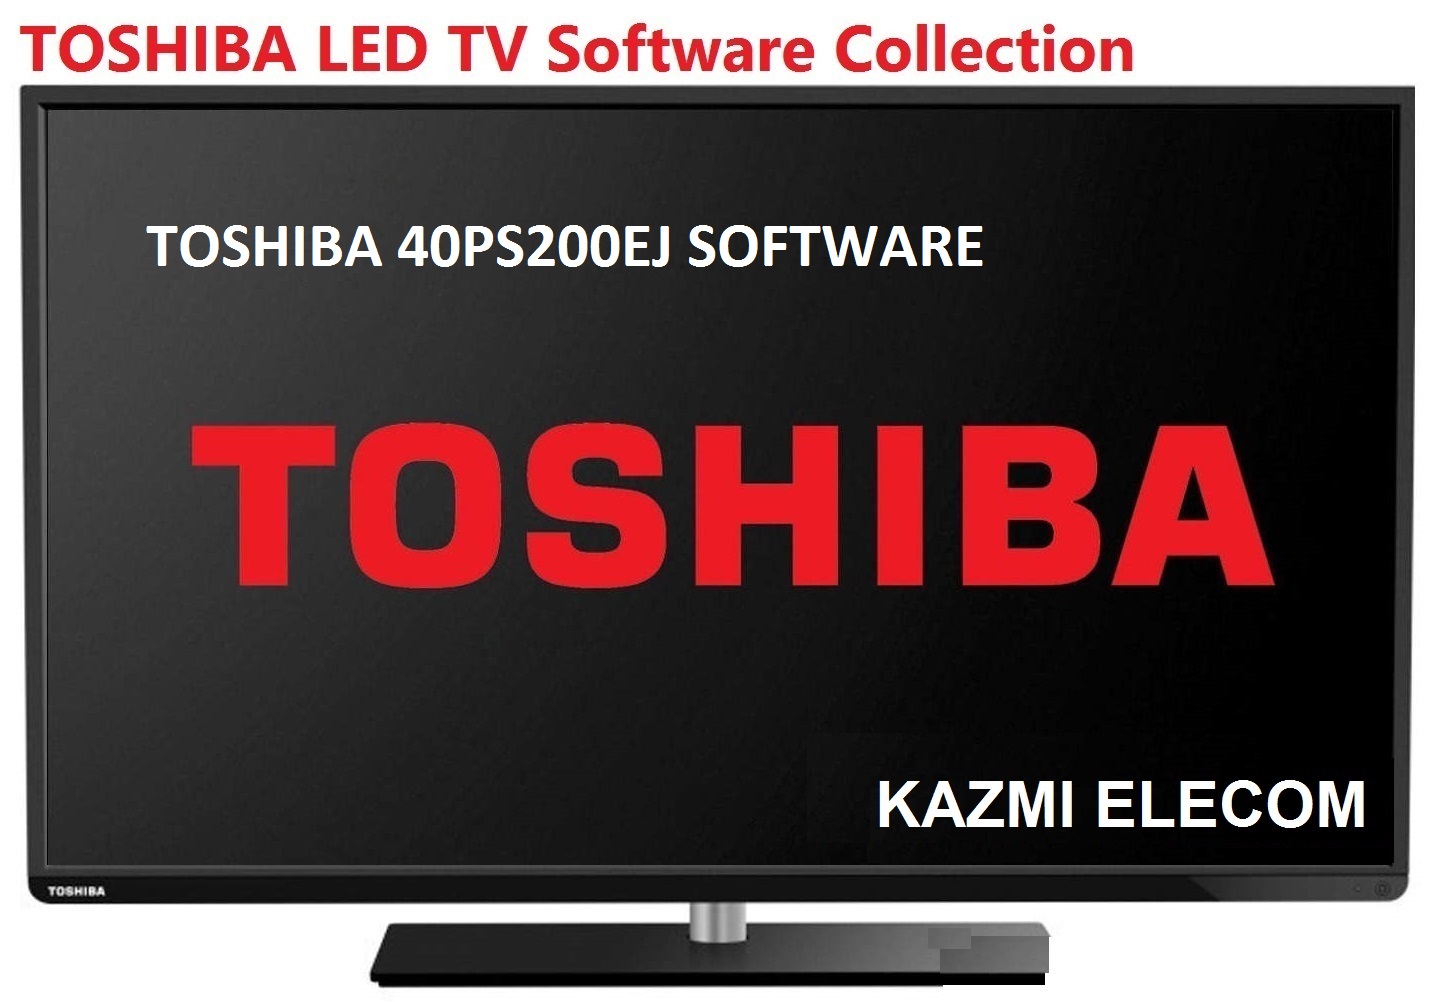 Toshiba 40Ps200Ej